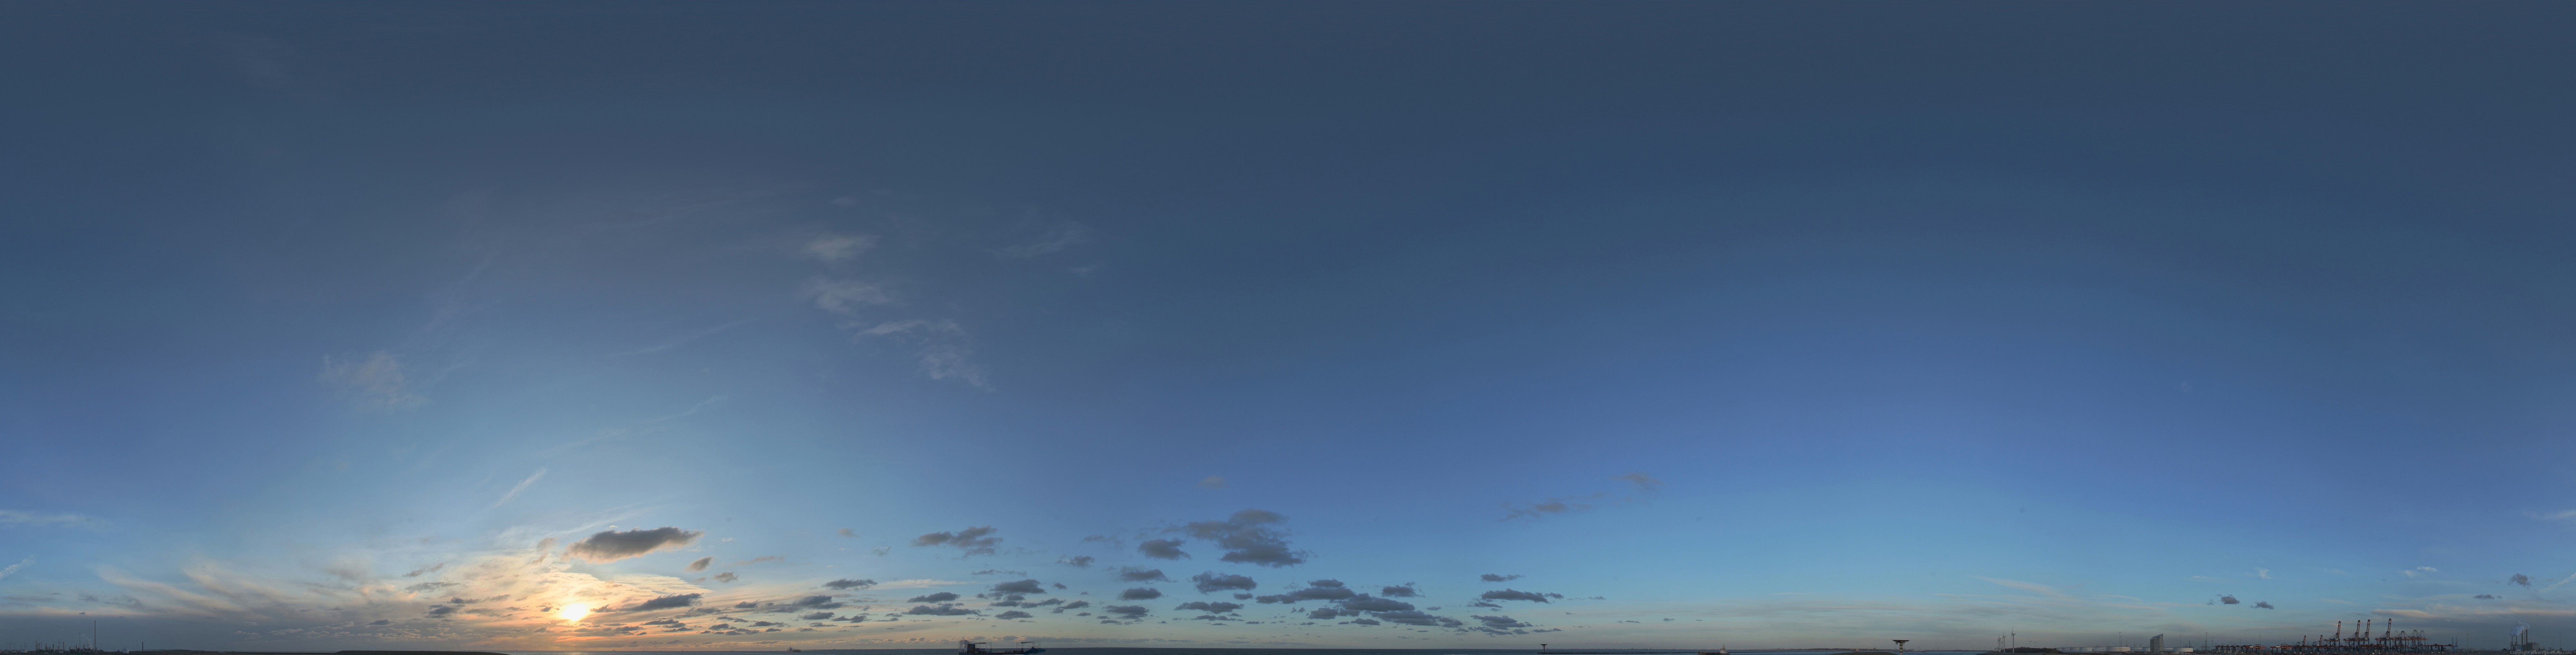 По небосклону высокому и прозрачному. Небо панорама. Панорама неба в высоком разрешении. Небо панорама 360. Вечернее небо панорама.